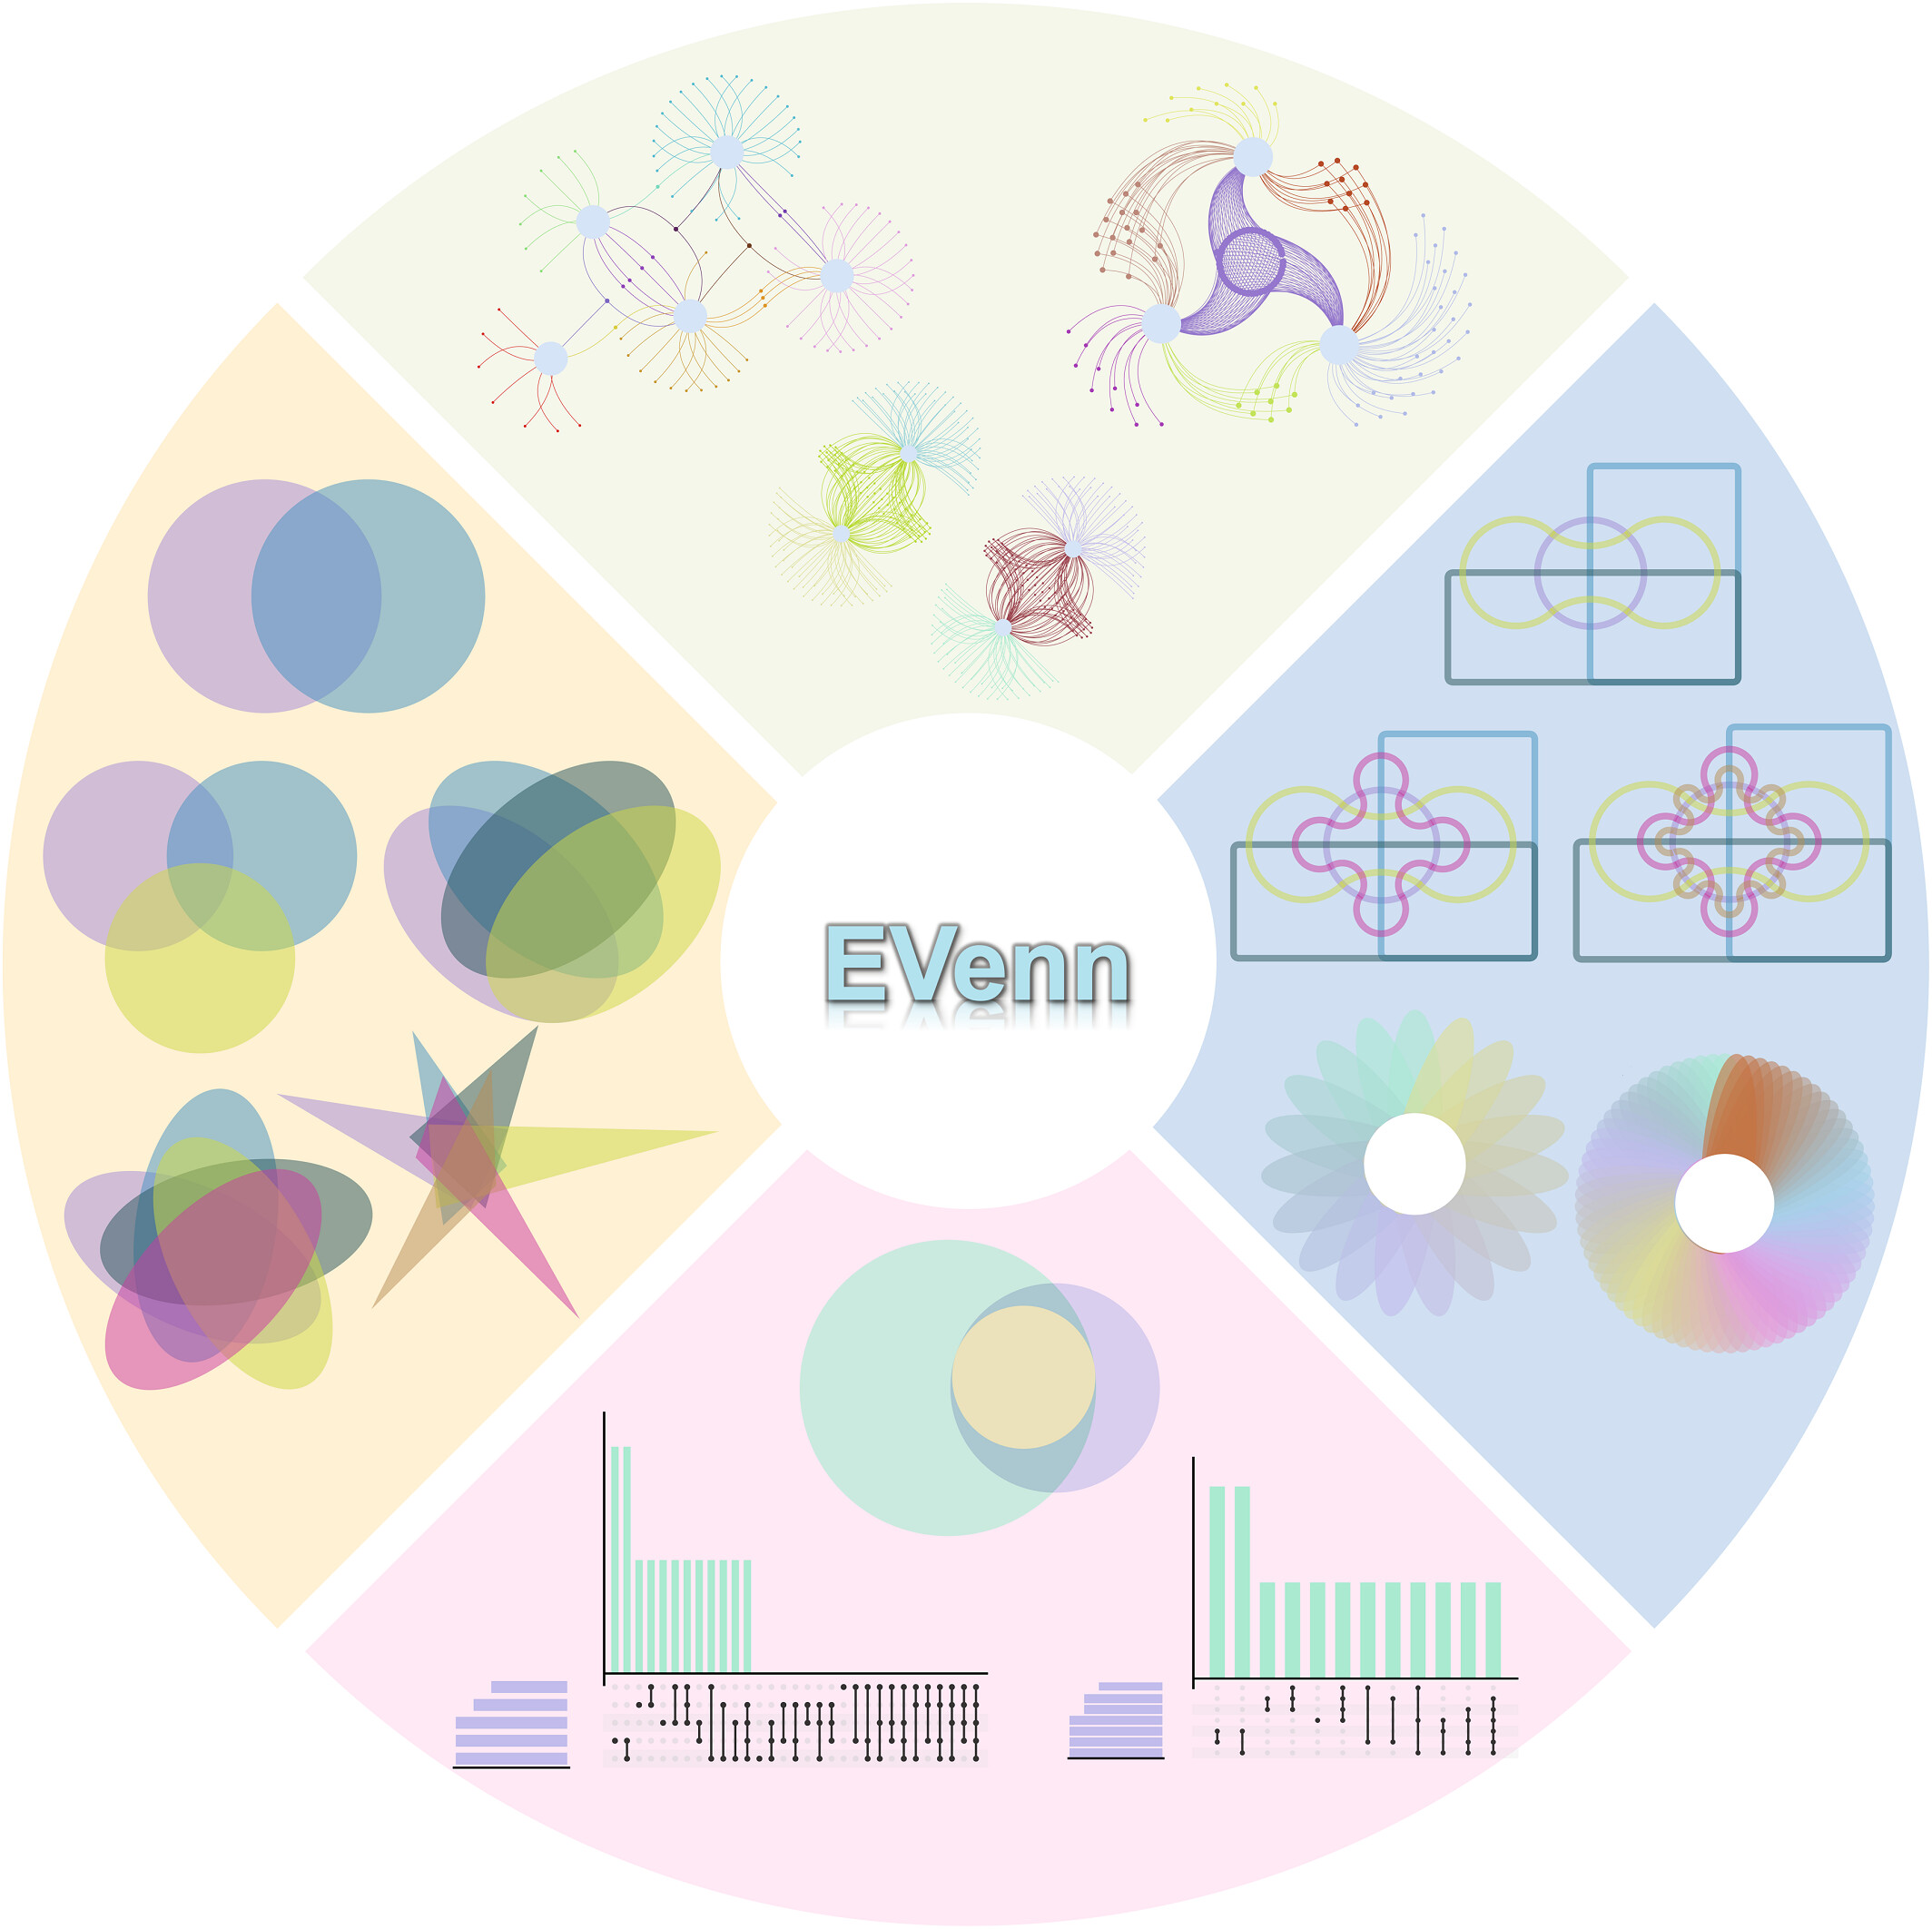 1. 全面的韦恩功能：EVenn提供了一个统一的平台，包含多种韦恩图工具，从交互式图到网络图，满足了代谢组学、基因组学、转录组学和蛋白质组学等多组学数据分析的复杂需求；2. 高效的数据探索：EVenn的数据中心支持标准化的数据格式，简化数据上传和分析过程。本文通过代表性结果和详细案例展示其实用性；3.    用户友好的界面：EVenn拥有易用的界面，简化了各种韦恩图、欧拉图、UpSet图的生成过程。EVenn是研究人员解读多组学数据的好用工具。